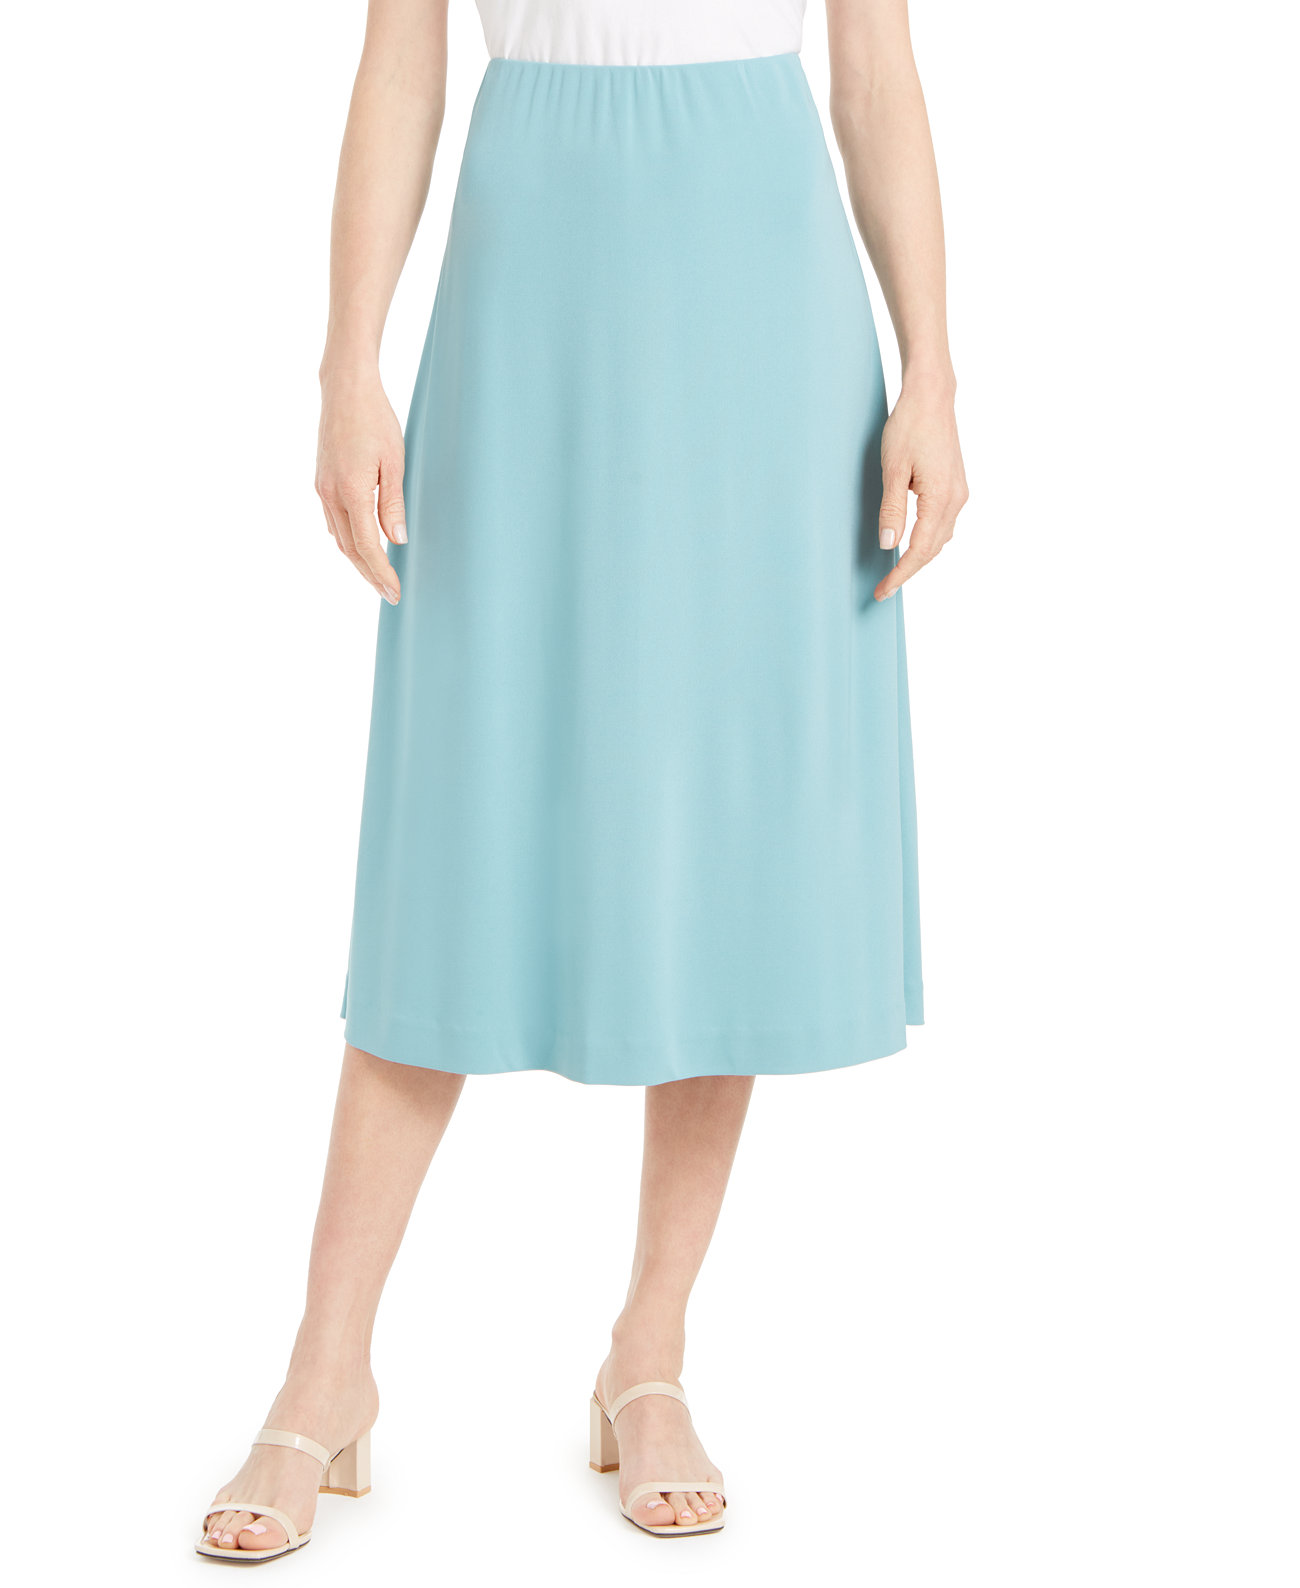 Натянутая юбка-миди, созданная для Macy's Alfani